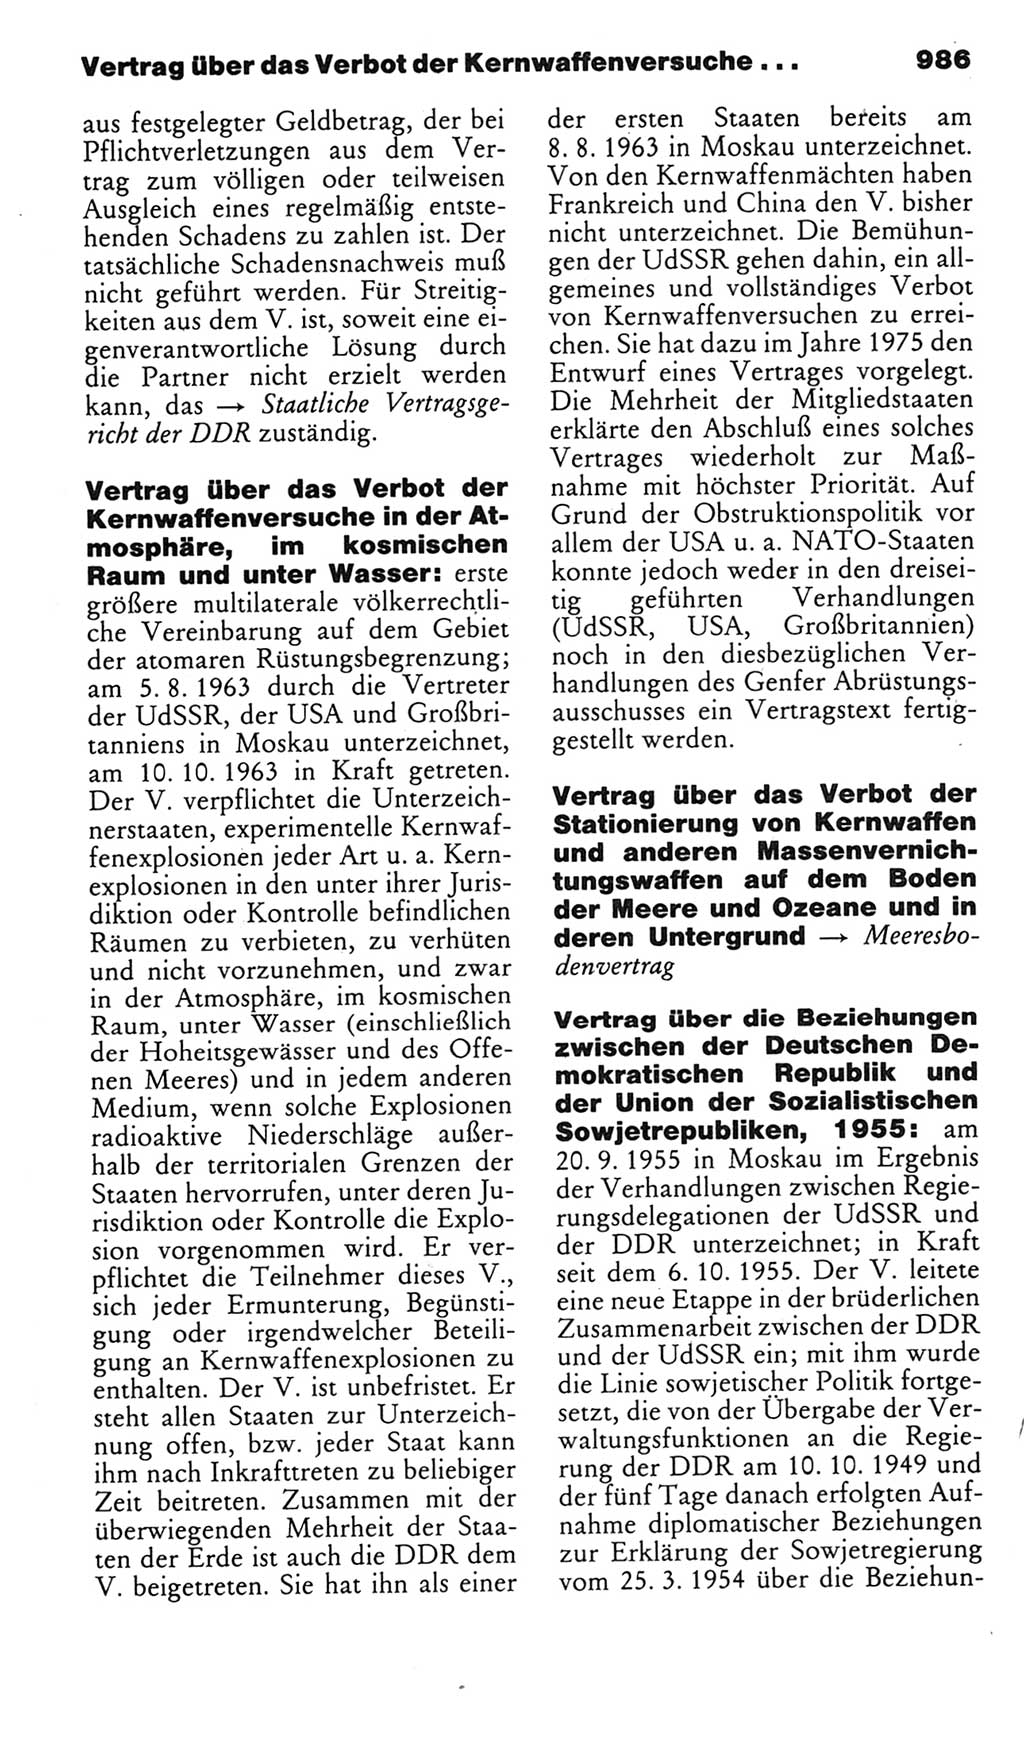 Kleines politisches Wörterbuch [Deutsche Demokratische Republik (DDR)] 1985, Seite 986 (Kl. pol. Wb. DDR 1985, S. 986)